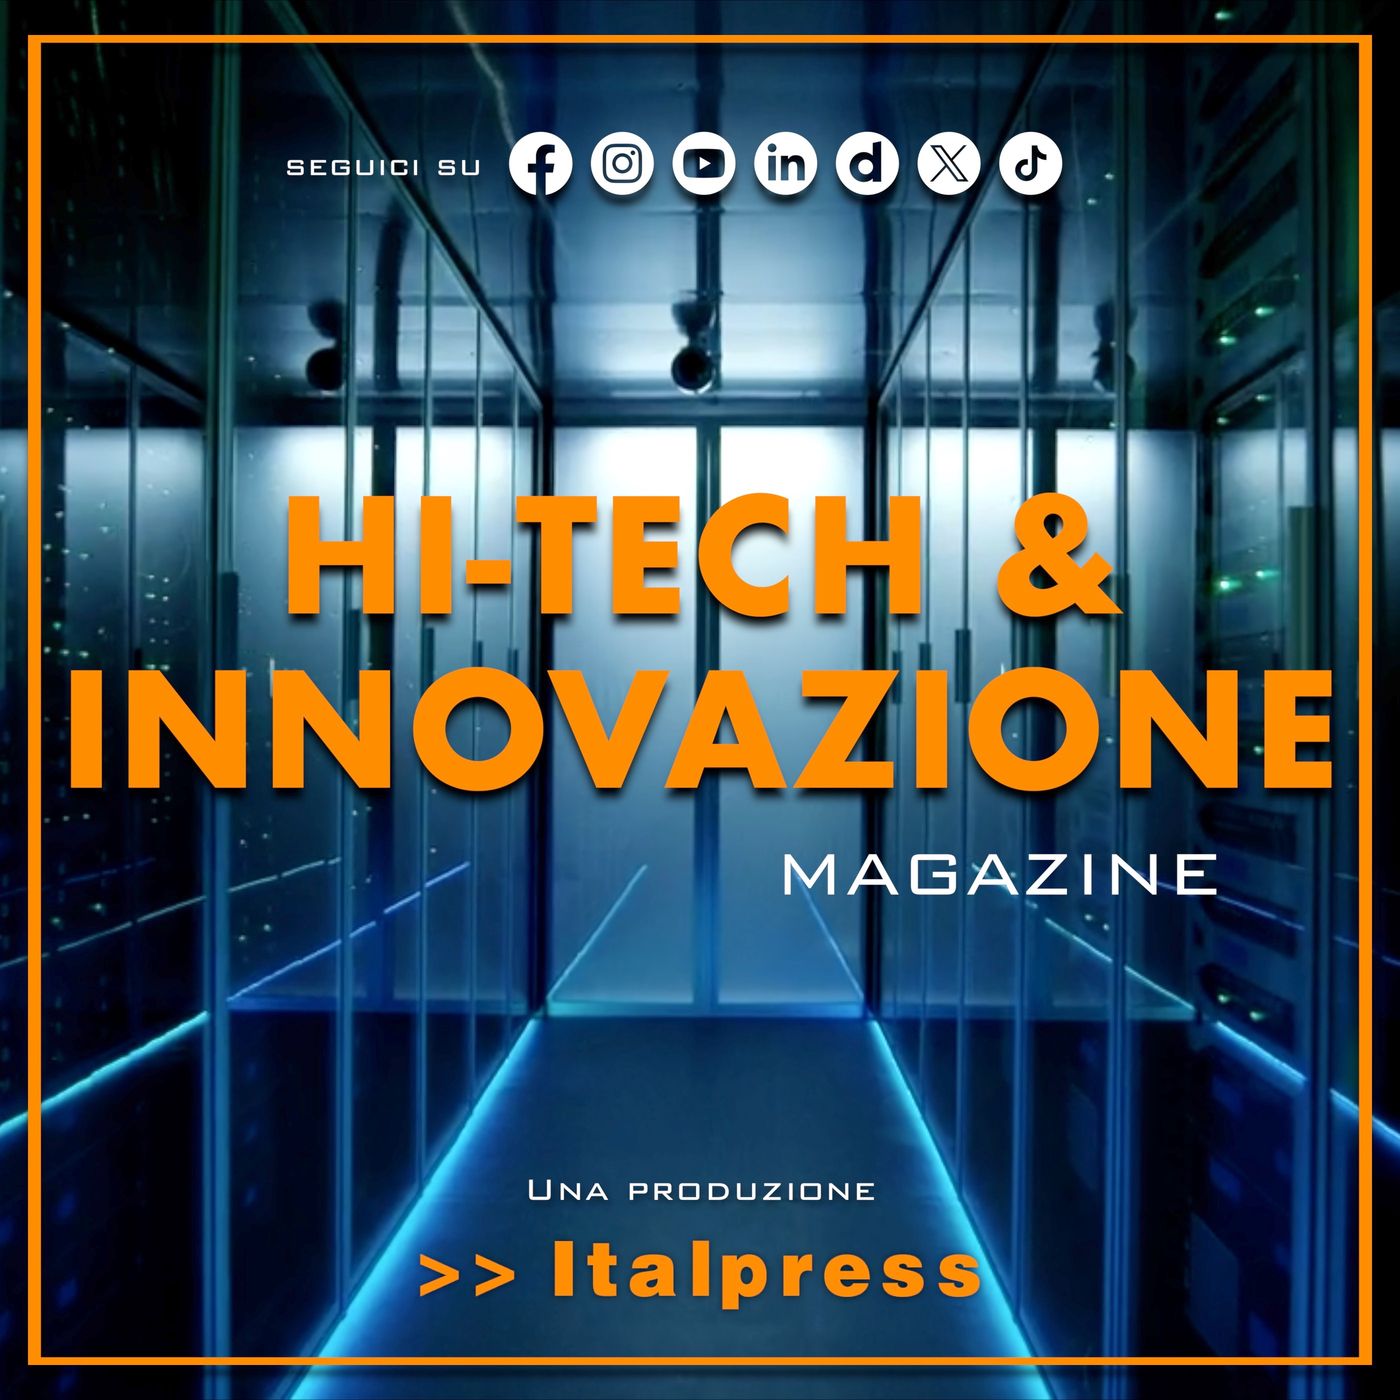 Hi-Tech & Innovazione Magazine